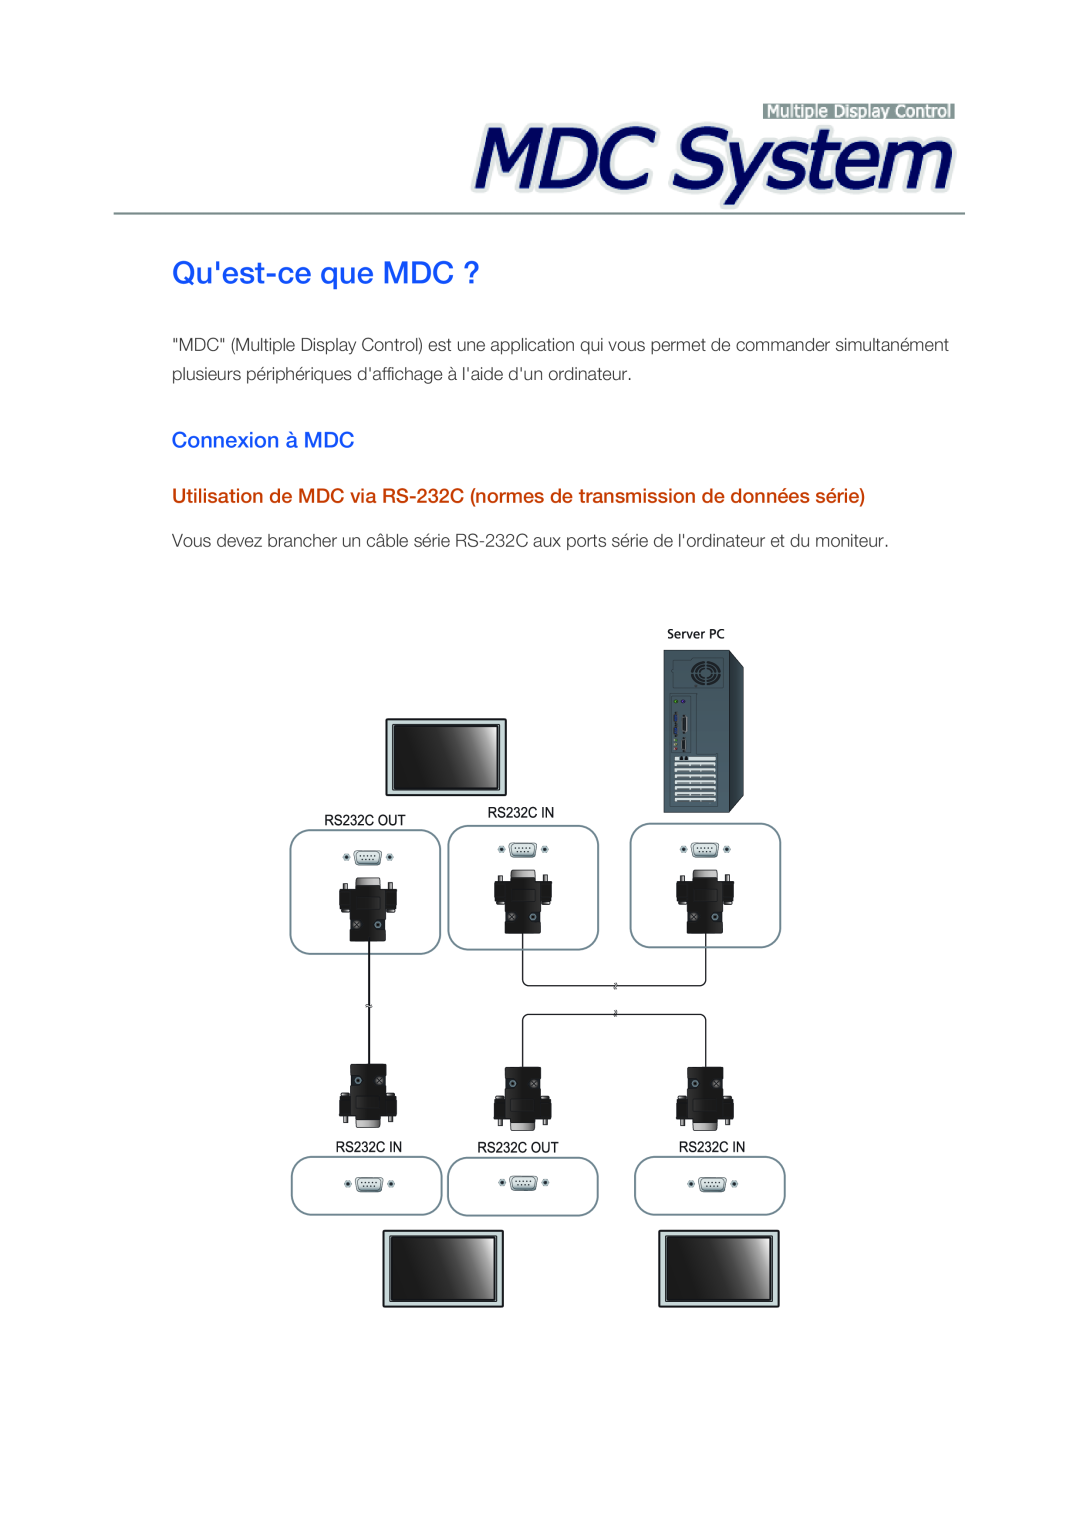 Samsung LH46CRPMBC/EN, LH46CRPMBD/EN, LH40CRPMBD/EN, LH40CRPMBC/EN manual Quest-ce que MDC ?, Connexion à MDC 